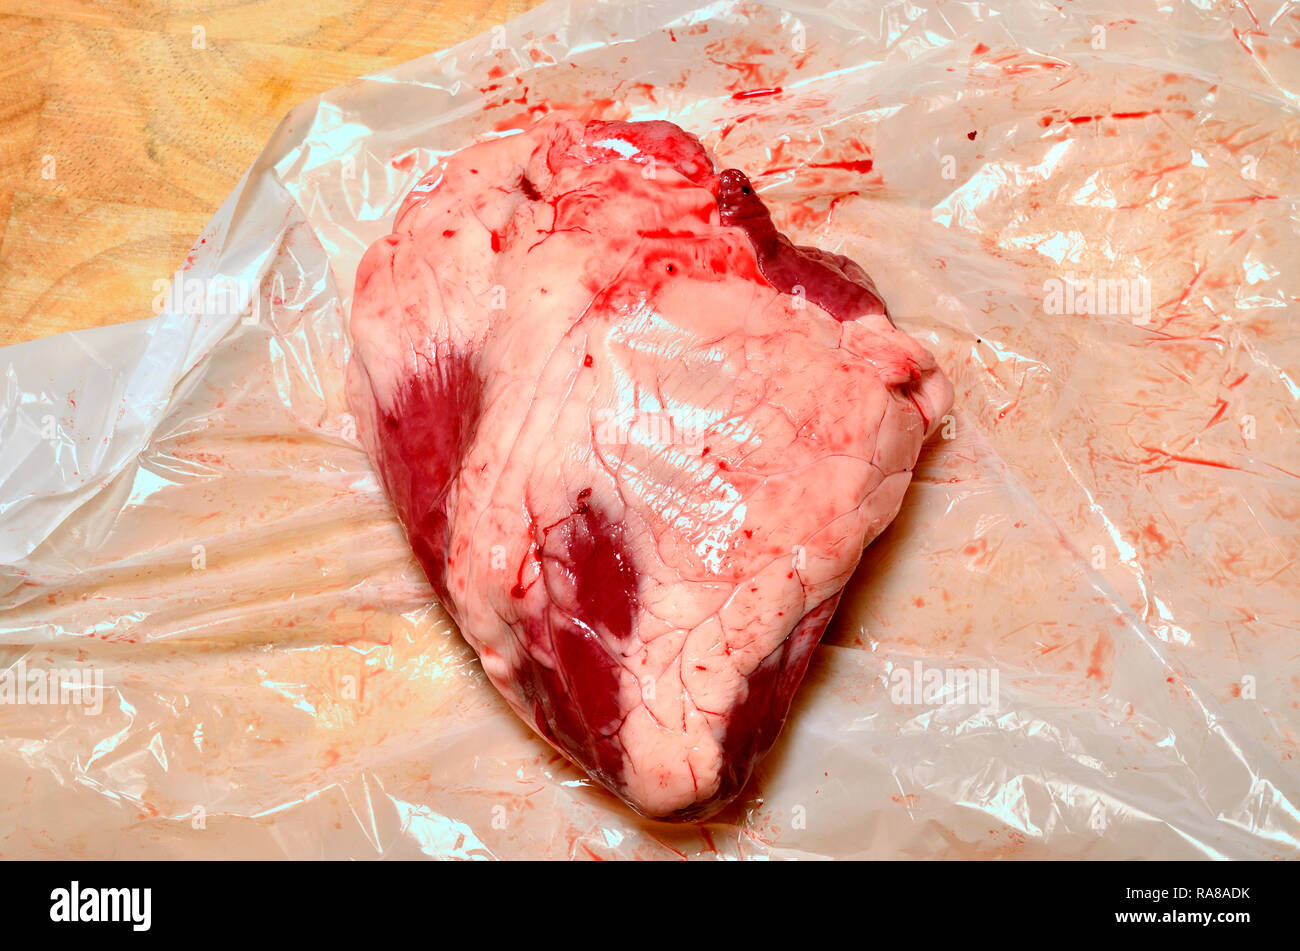 Le coeur d'agneau acheté dans un supermarché. Banque D'Images